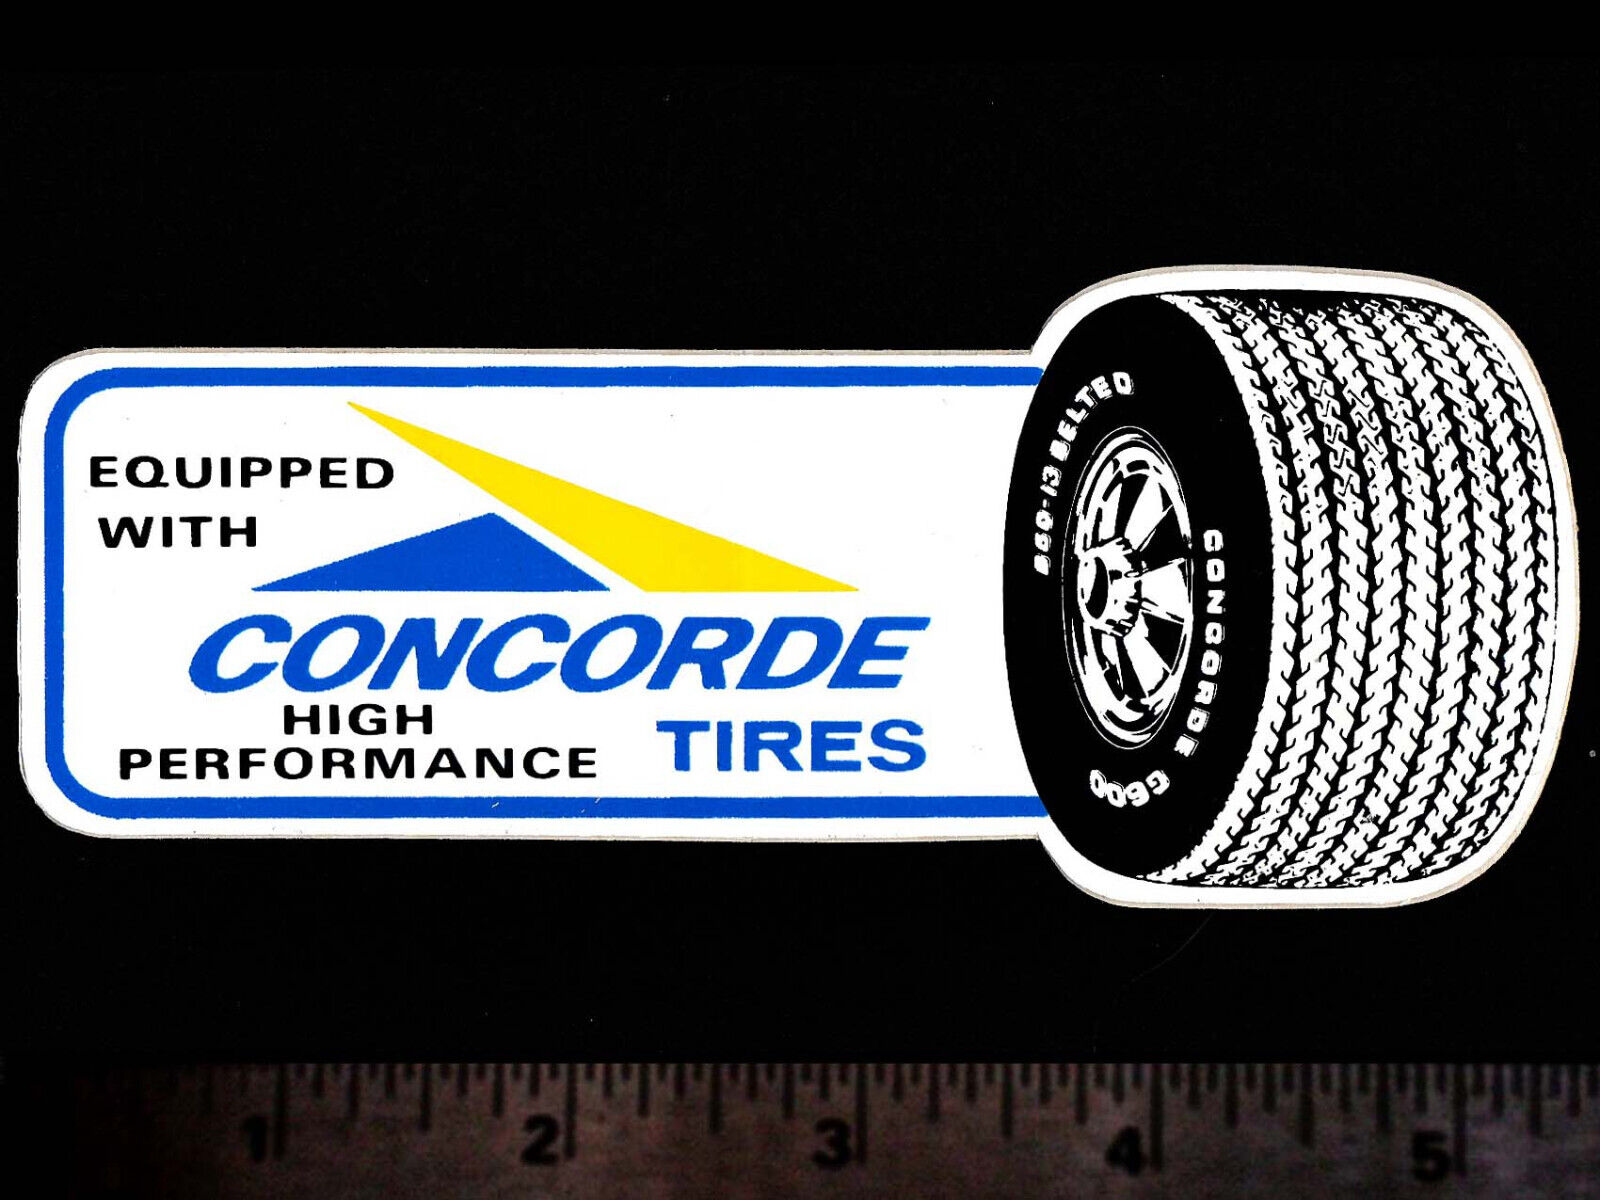 CONCORDE Tires - Original Vintage 1960\'s 70\'s Racing Decal/Sticker